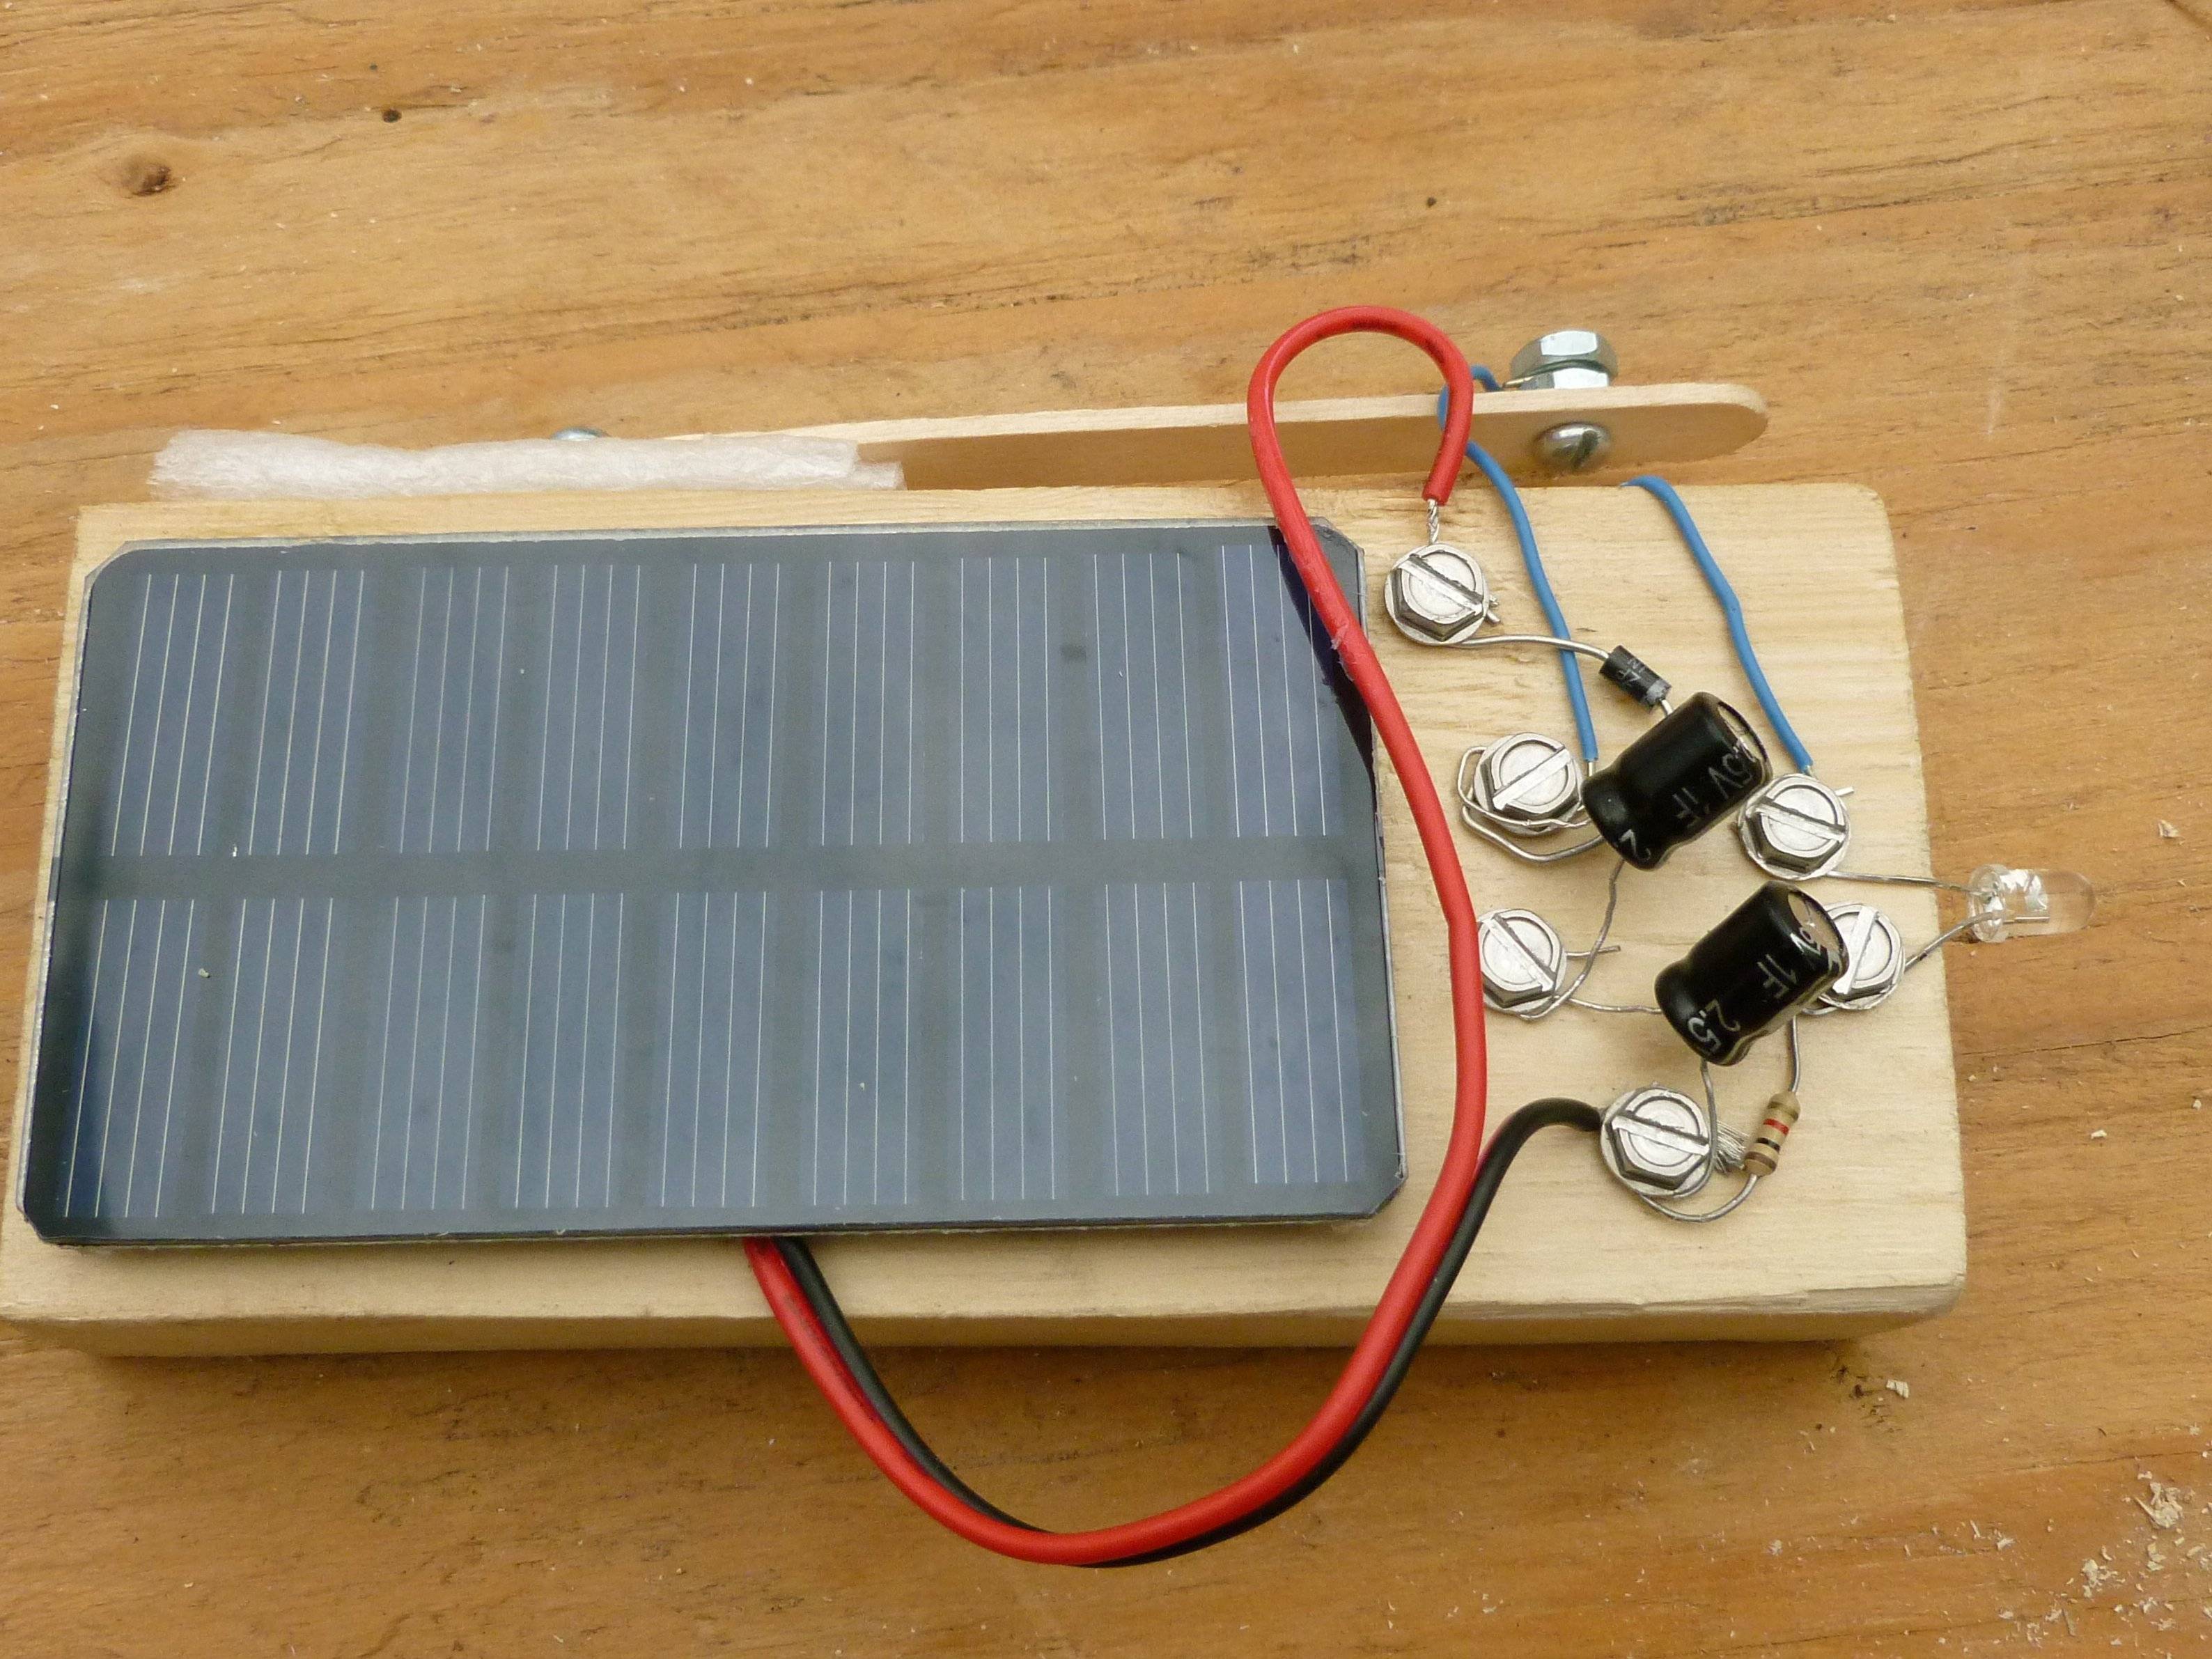 Как сделать солнечную батарею своими руками - смотрите здесь! пошаговая инструкция + фото